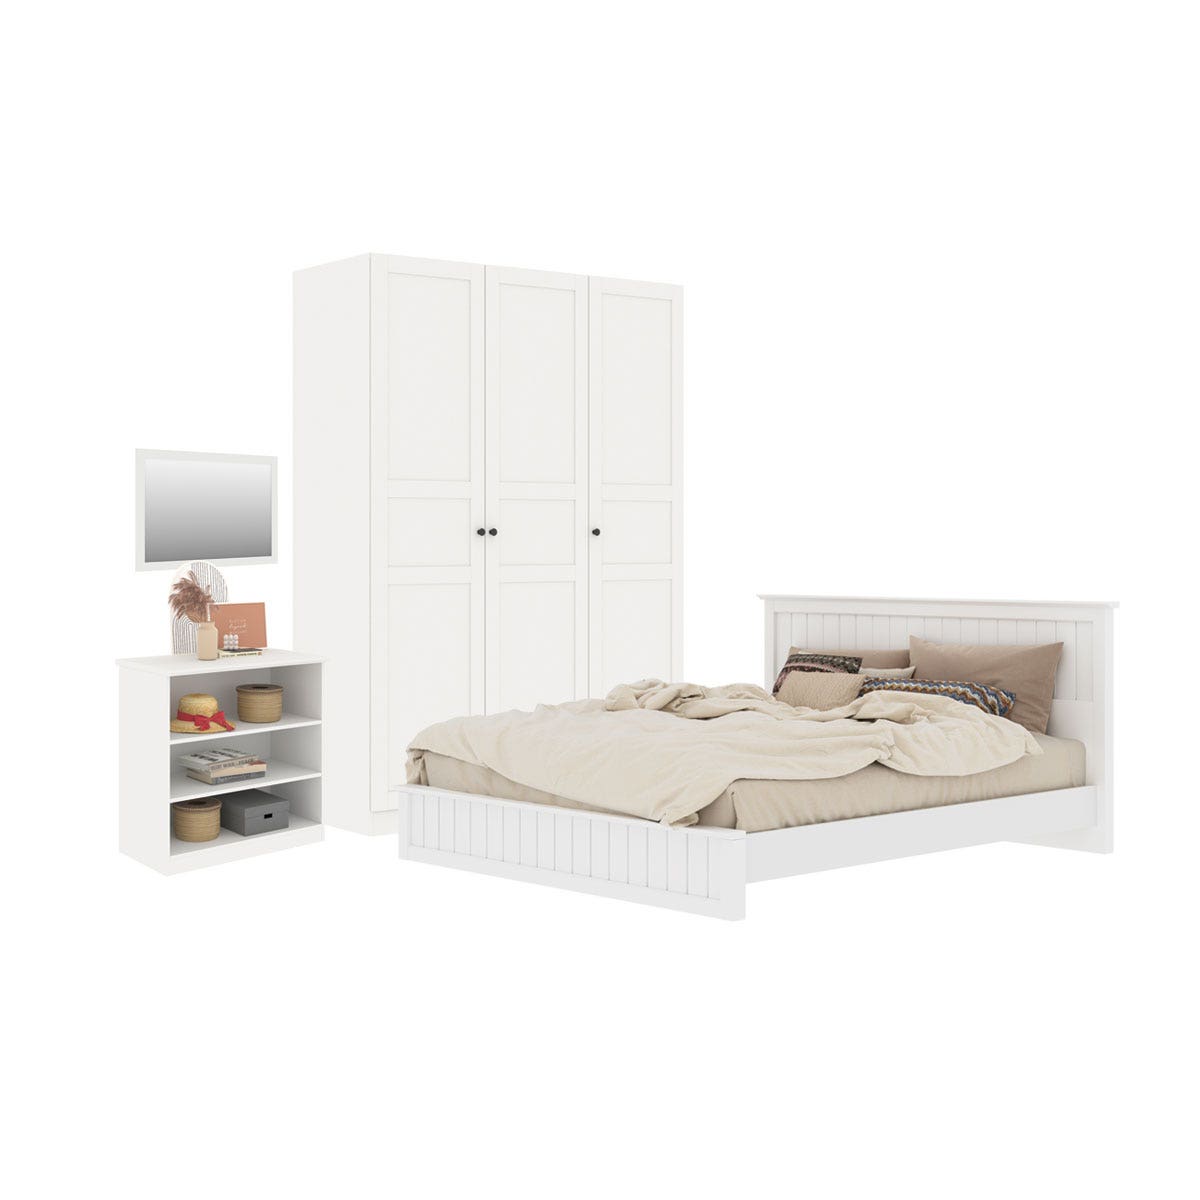 ชุดห้องนอน เตียง 5' & ตู้เสื้อผ้า & ตู้เตี้ย รุ่น Moneta พร้อม กระจกแขวน รุ่น Selector สีขาว01